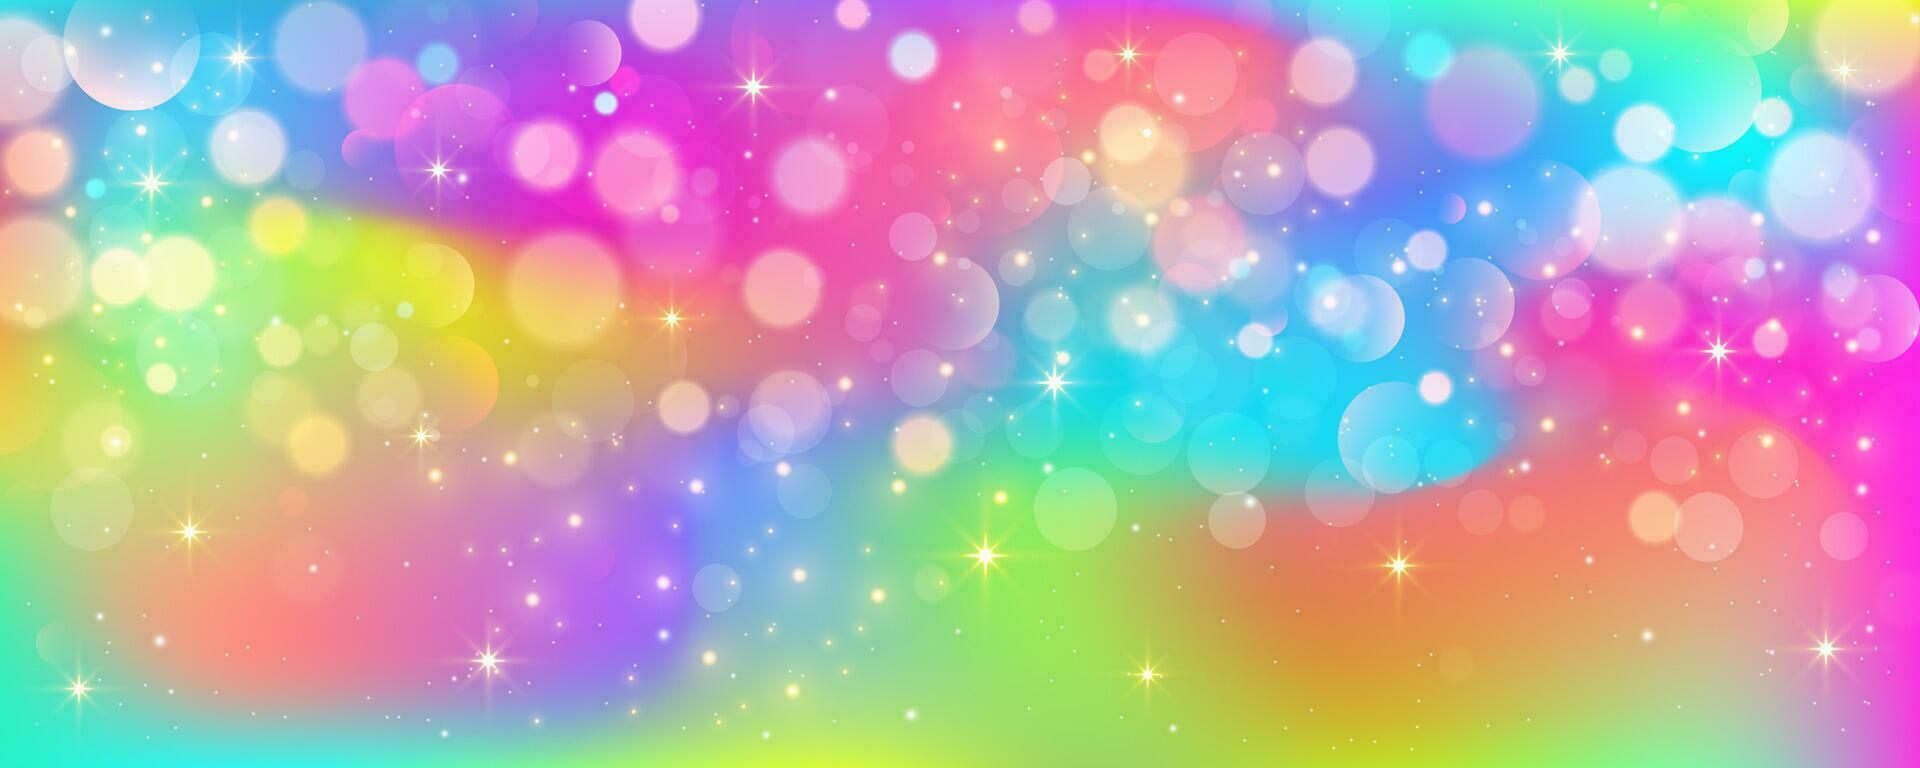 Regenbogen Einhorn Pastell- Hintergrund mit funkeln Sterne. Rosa wellig Fantasie Himmel. holographisch Raum mit Bokeh. Fee irisierend Gradient Hintergrund. Vektor